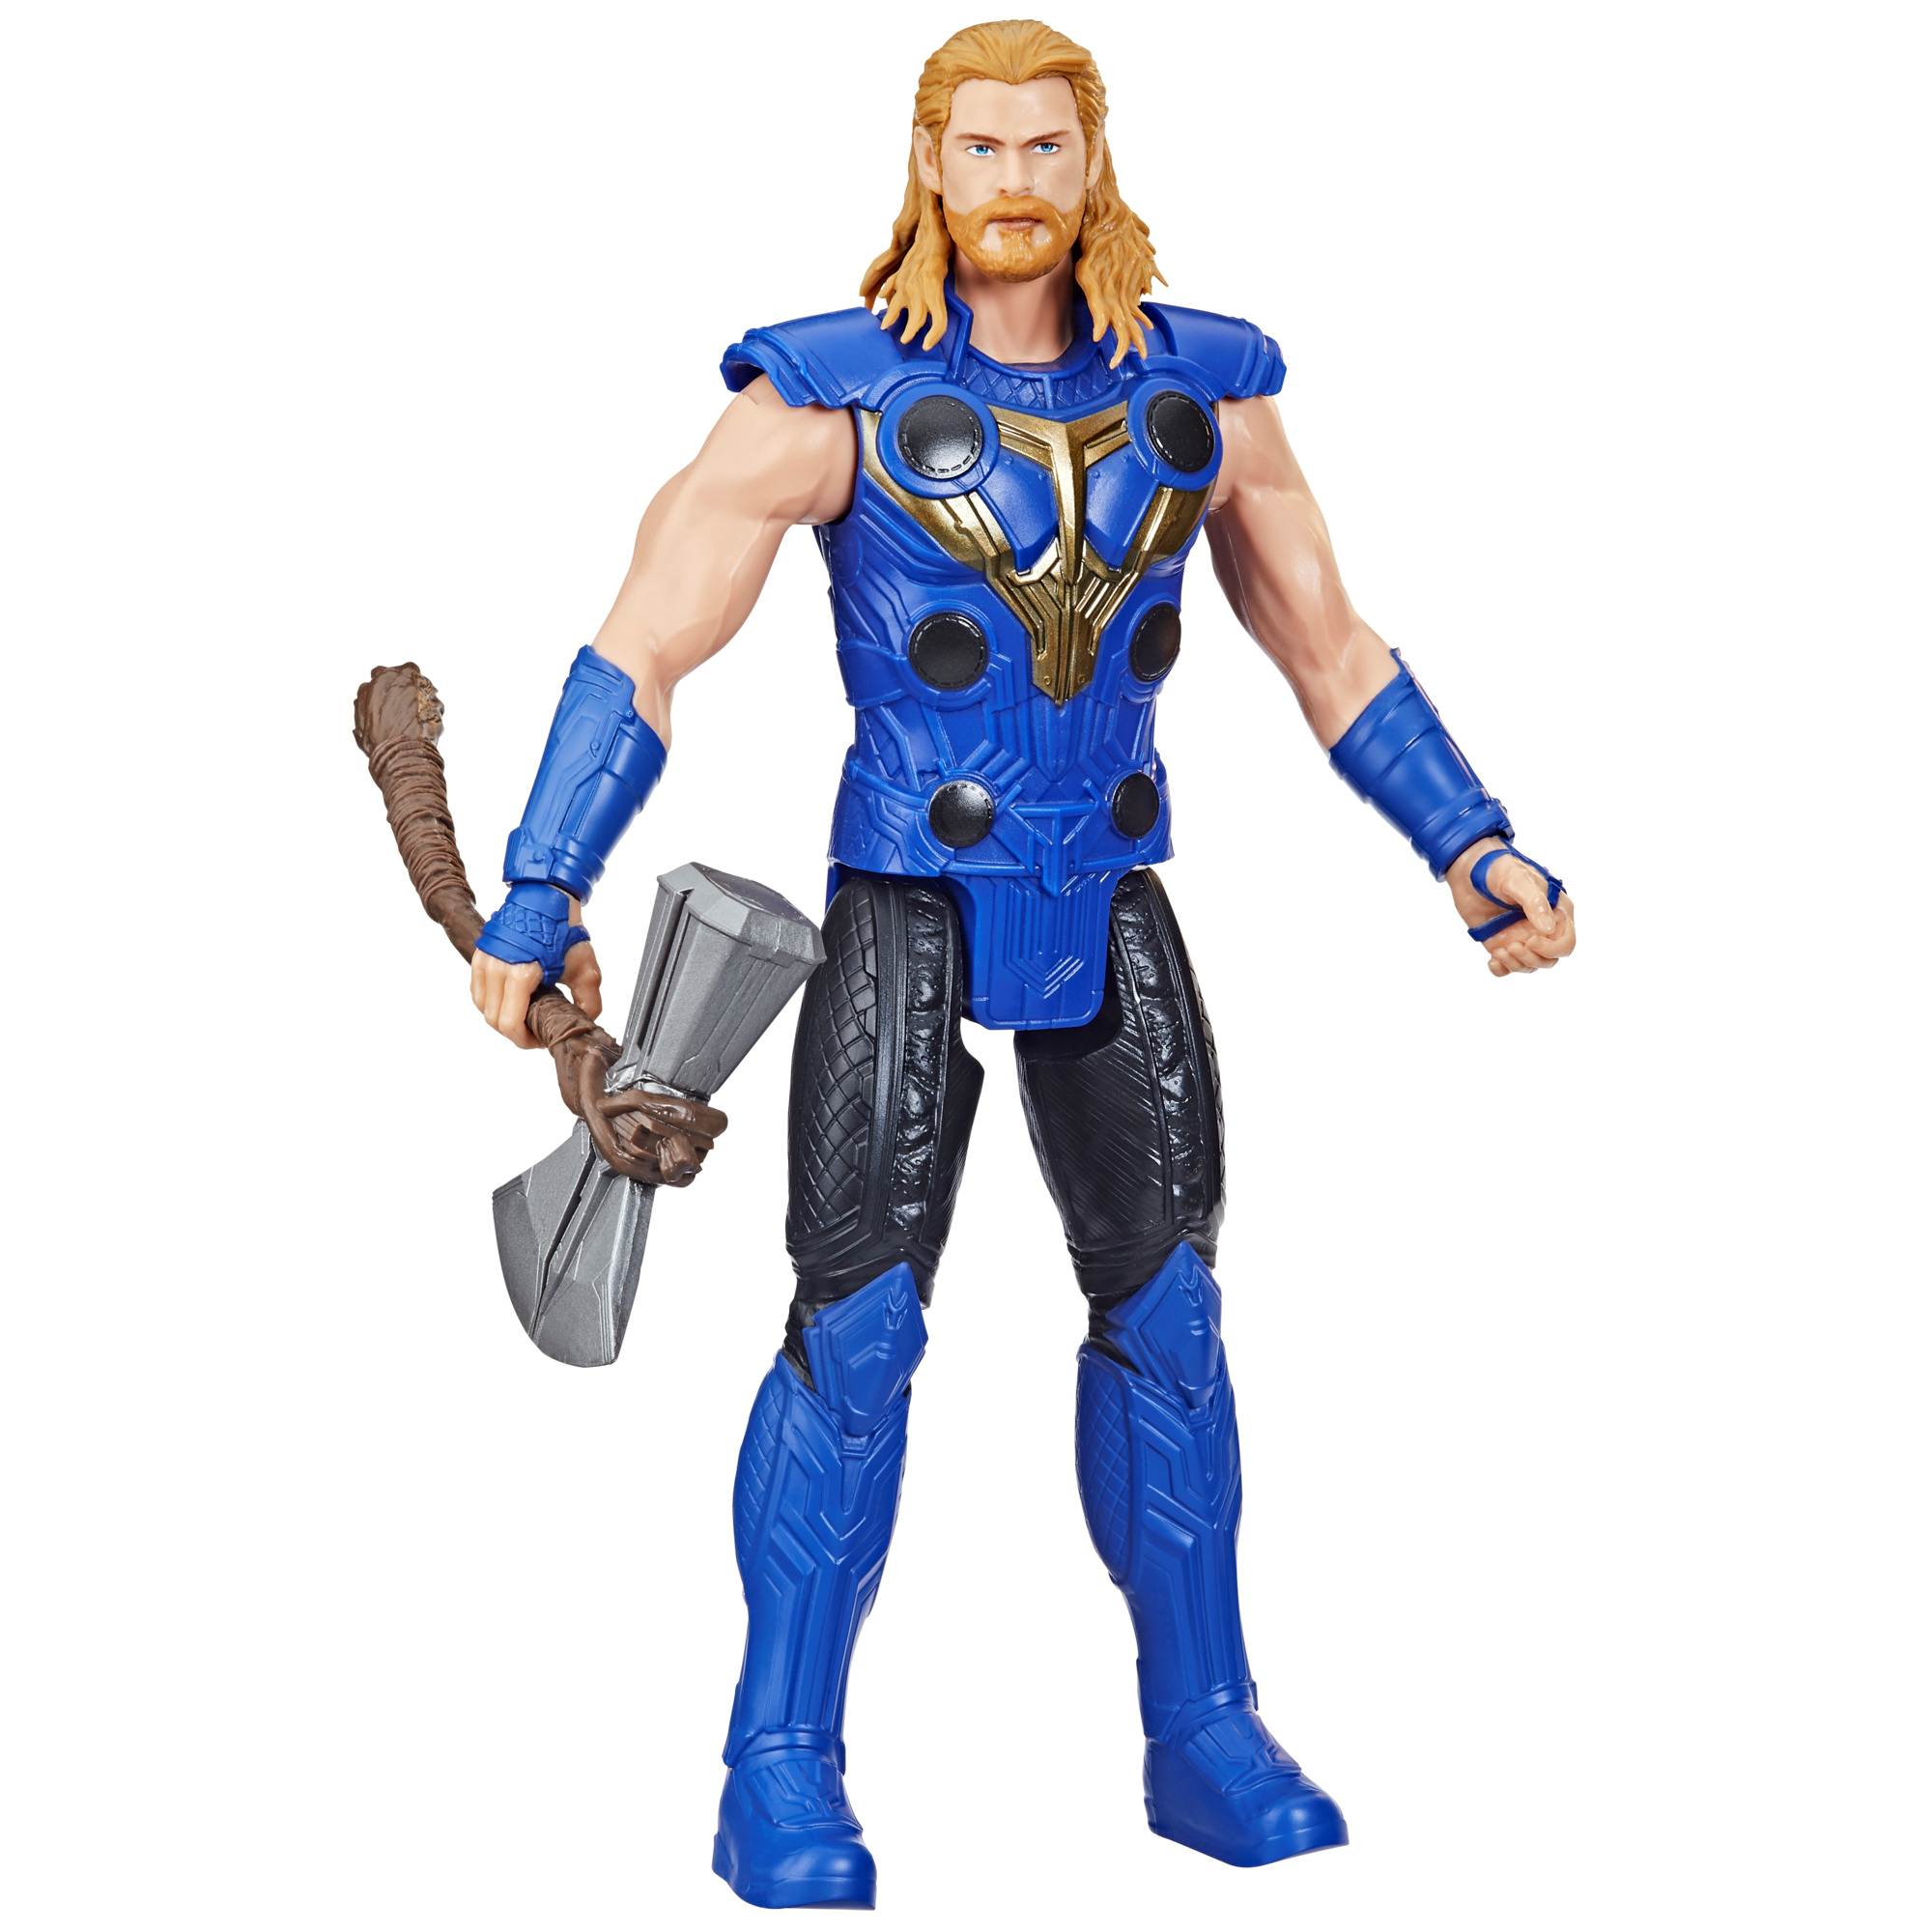 Hasbro marvel avengers, titan hero series - thor, action figure da 30 cm - Avengers